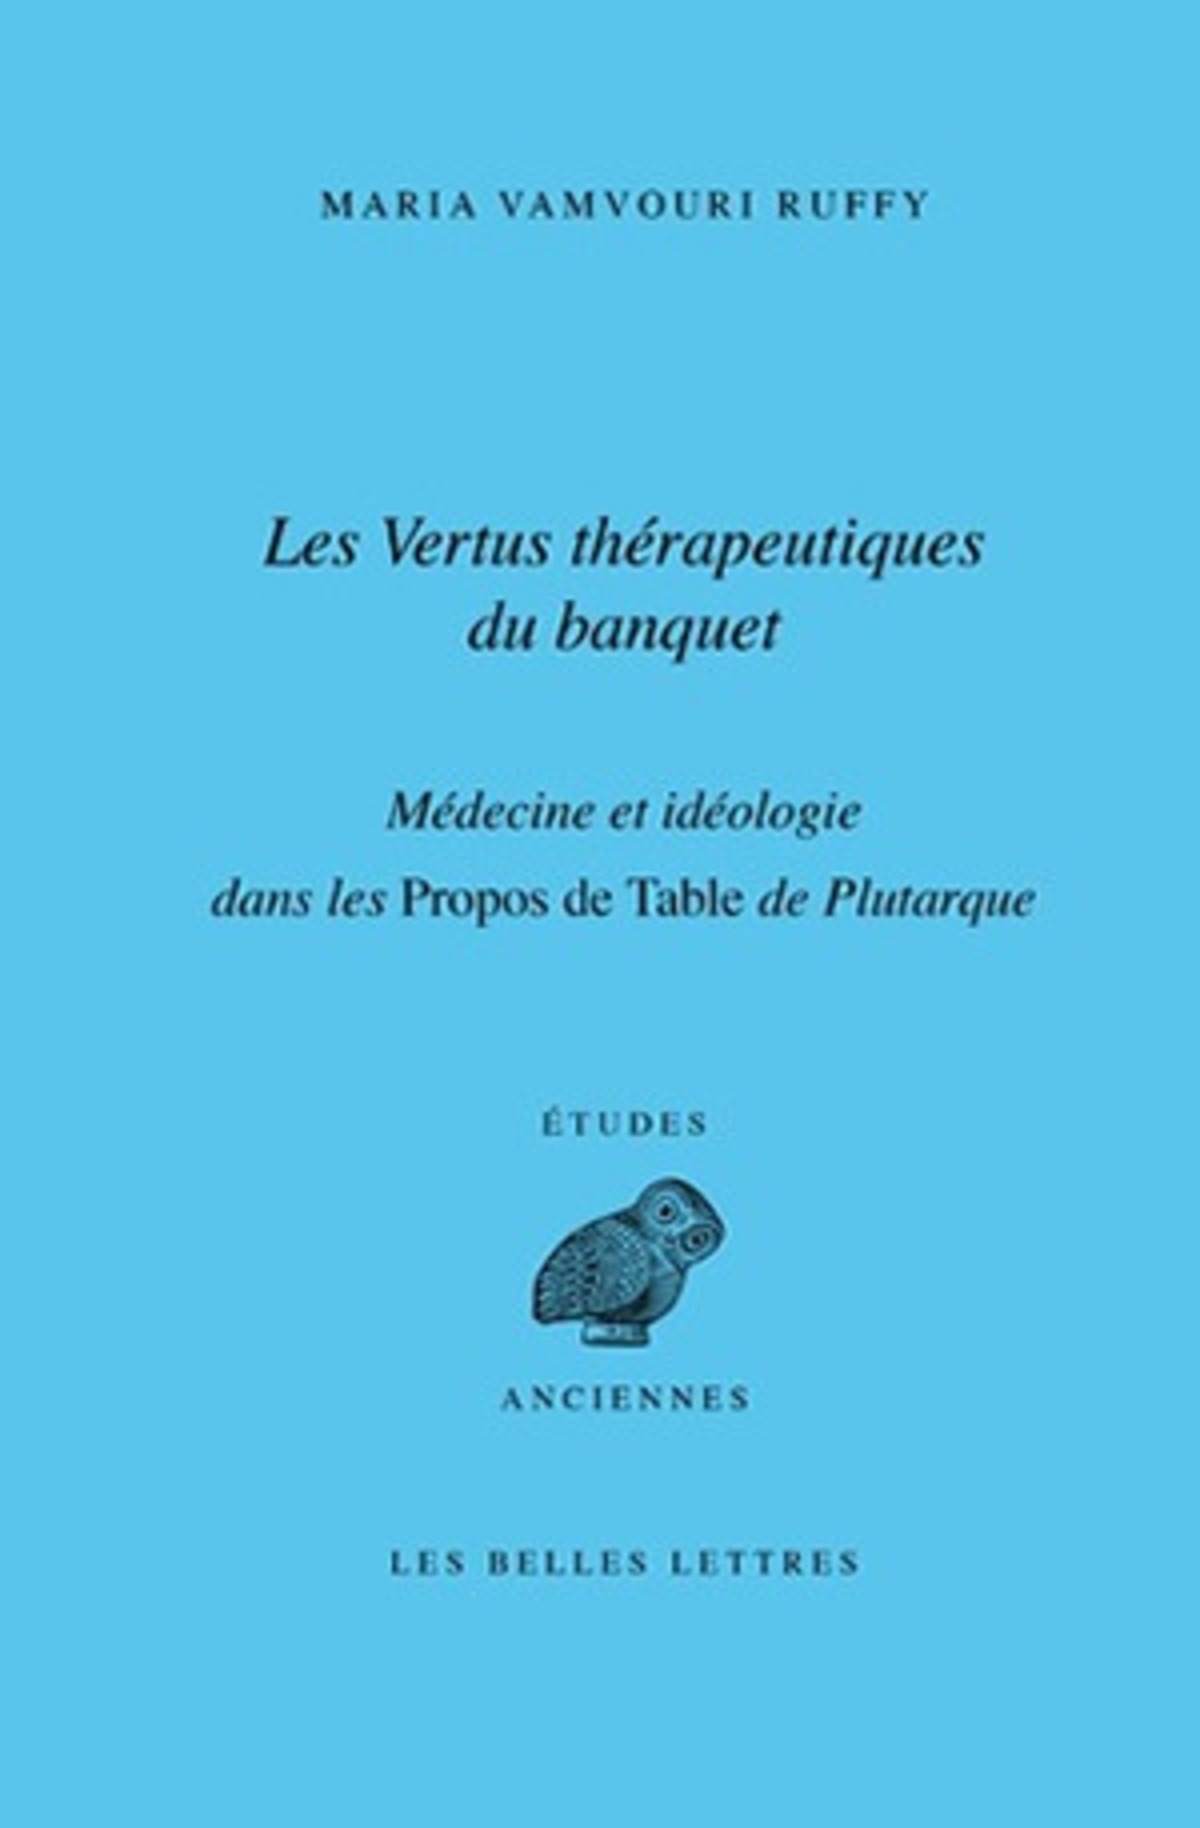 Les Vertus thérapeutiques du banquet : médecine et idéologie dans les Propos de Table de Plutarque